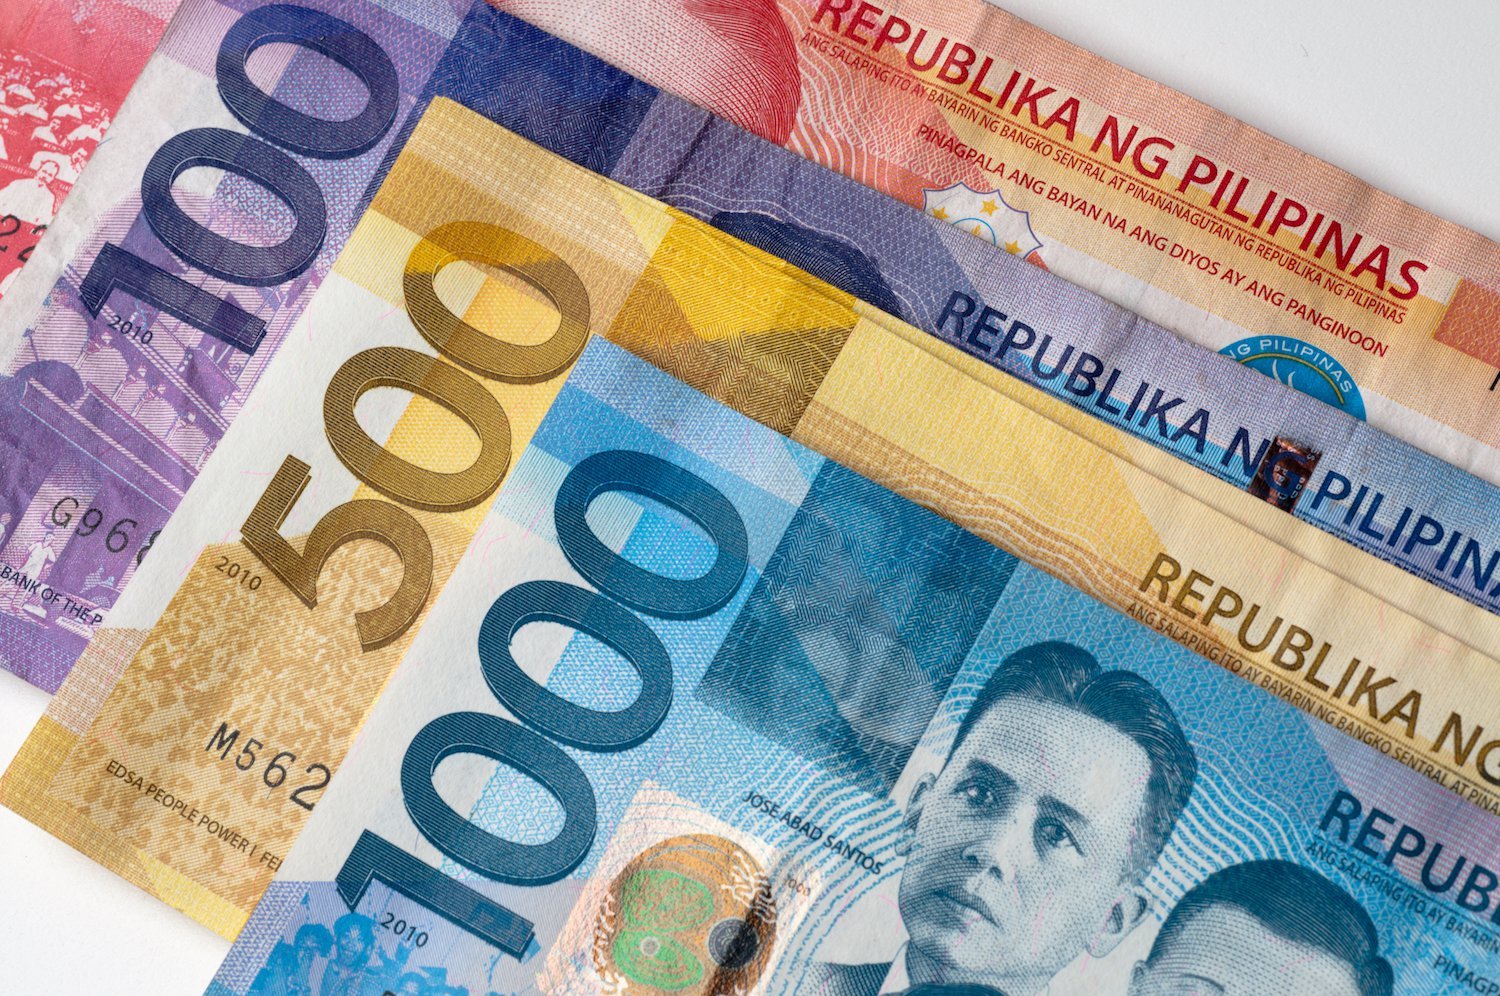 Currency call. Philippines currency. Филиппинское песо. Филиппины банковская система. Филиппинские деньги.